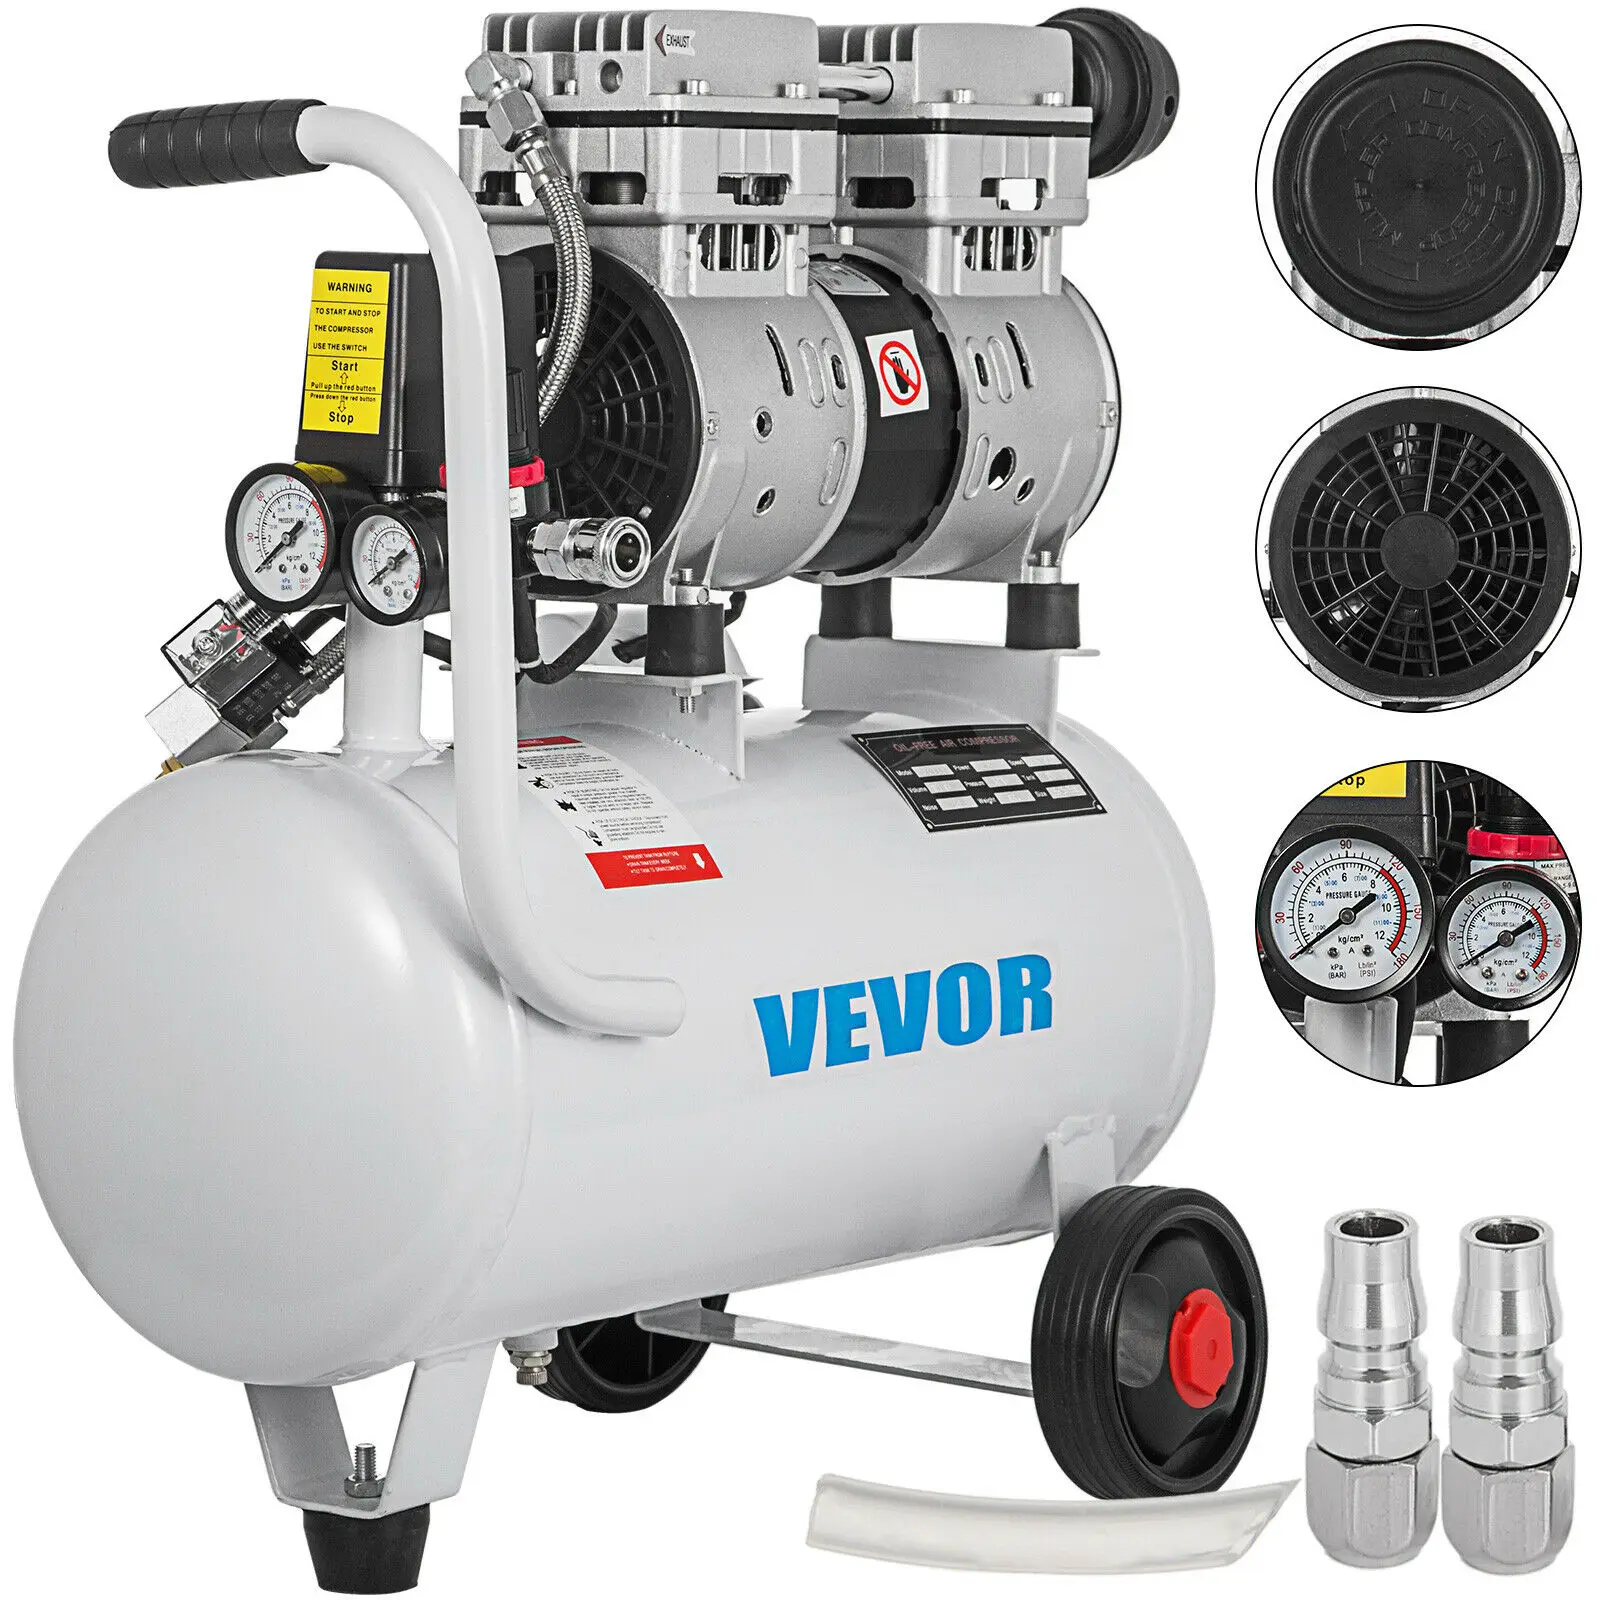 

VEVOR Air Compressor 5.5 Gallon Ultra Quiet Oil-free Air Compressor 25L Tank Silent Air Compressor 750W Oil free Compressor